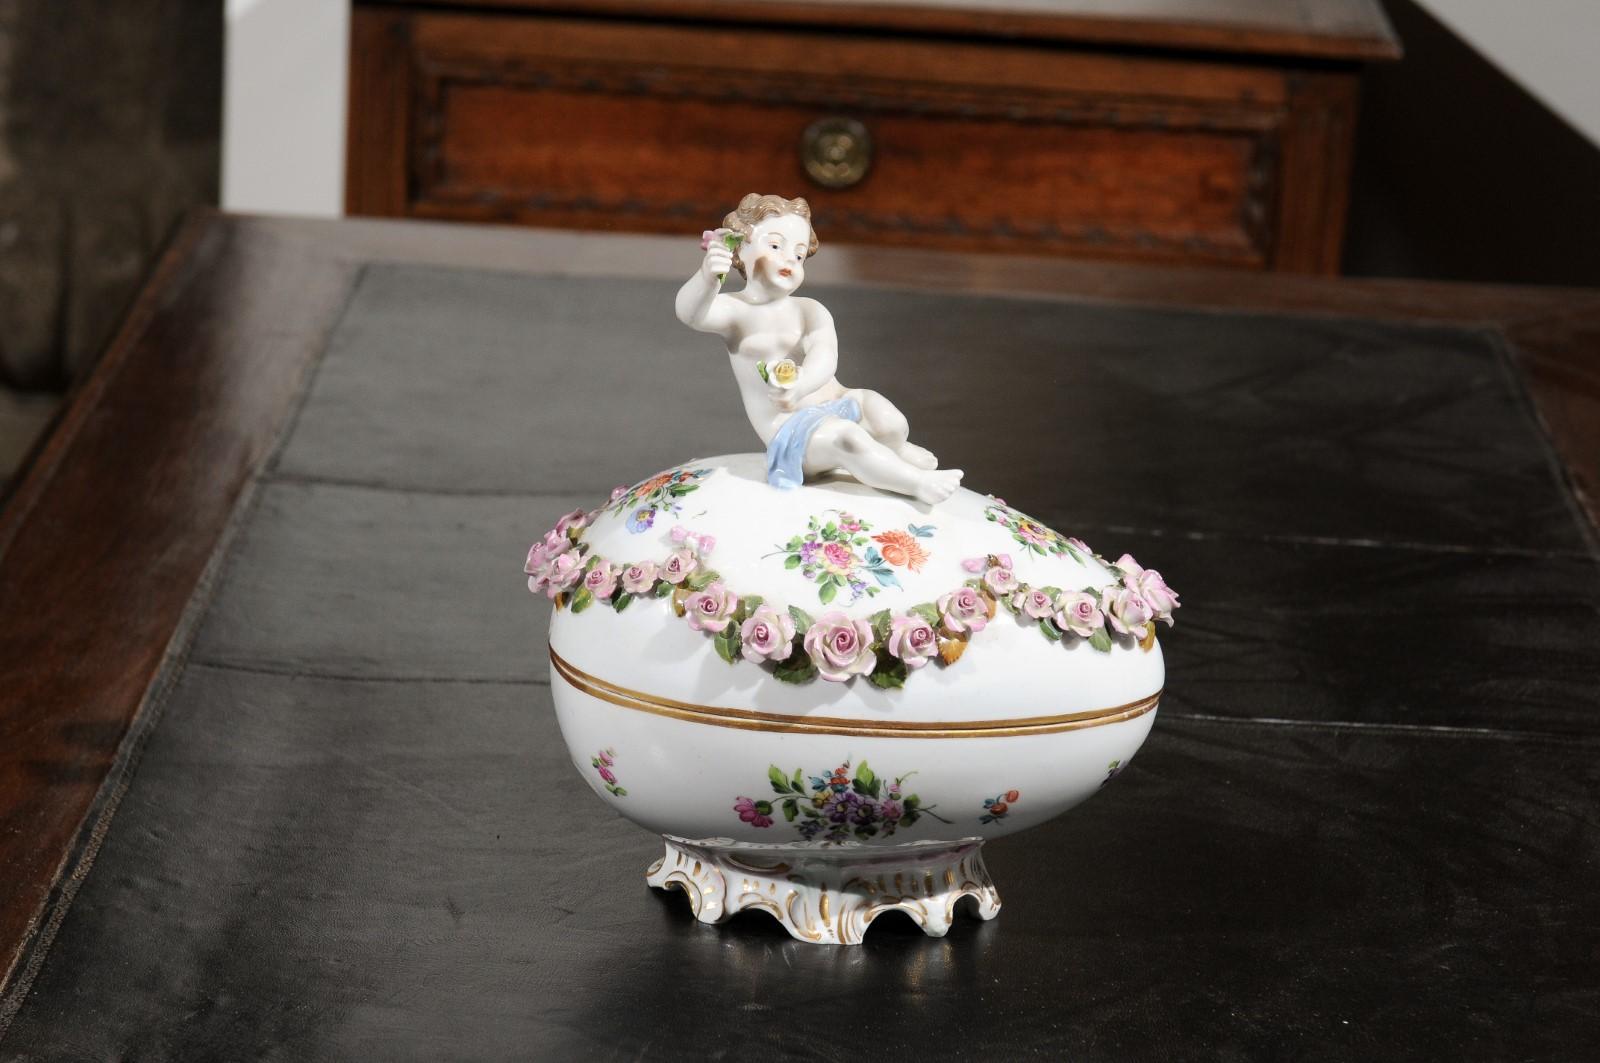 Ein französisches Porzellan-Ei der Manufaktur Sèvres aus dem 19. Jahrhundert, mit Putten- und Blumendekor von Hand bemalt. Dieses im 19. Jahrhundert in Frankreich entstandene, exquisite Deko-Ei zeigt auf seinem ovalen Deckel einen Putto, der in